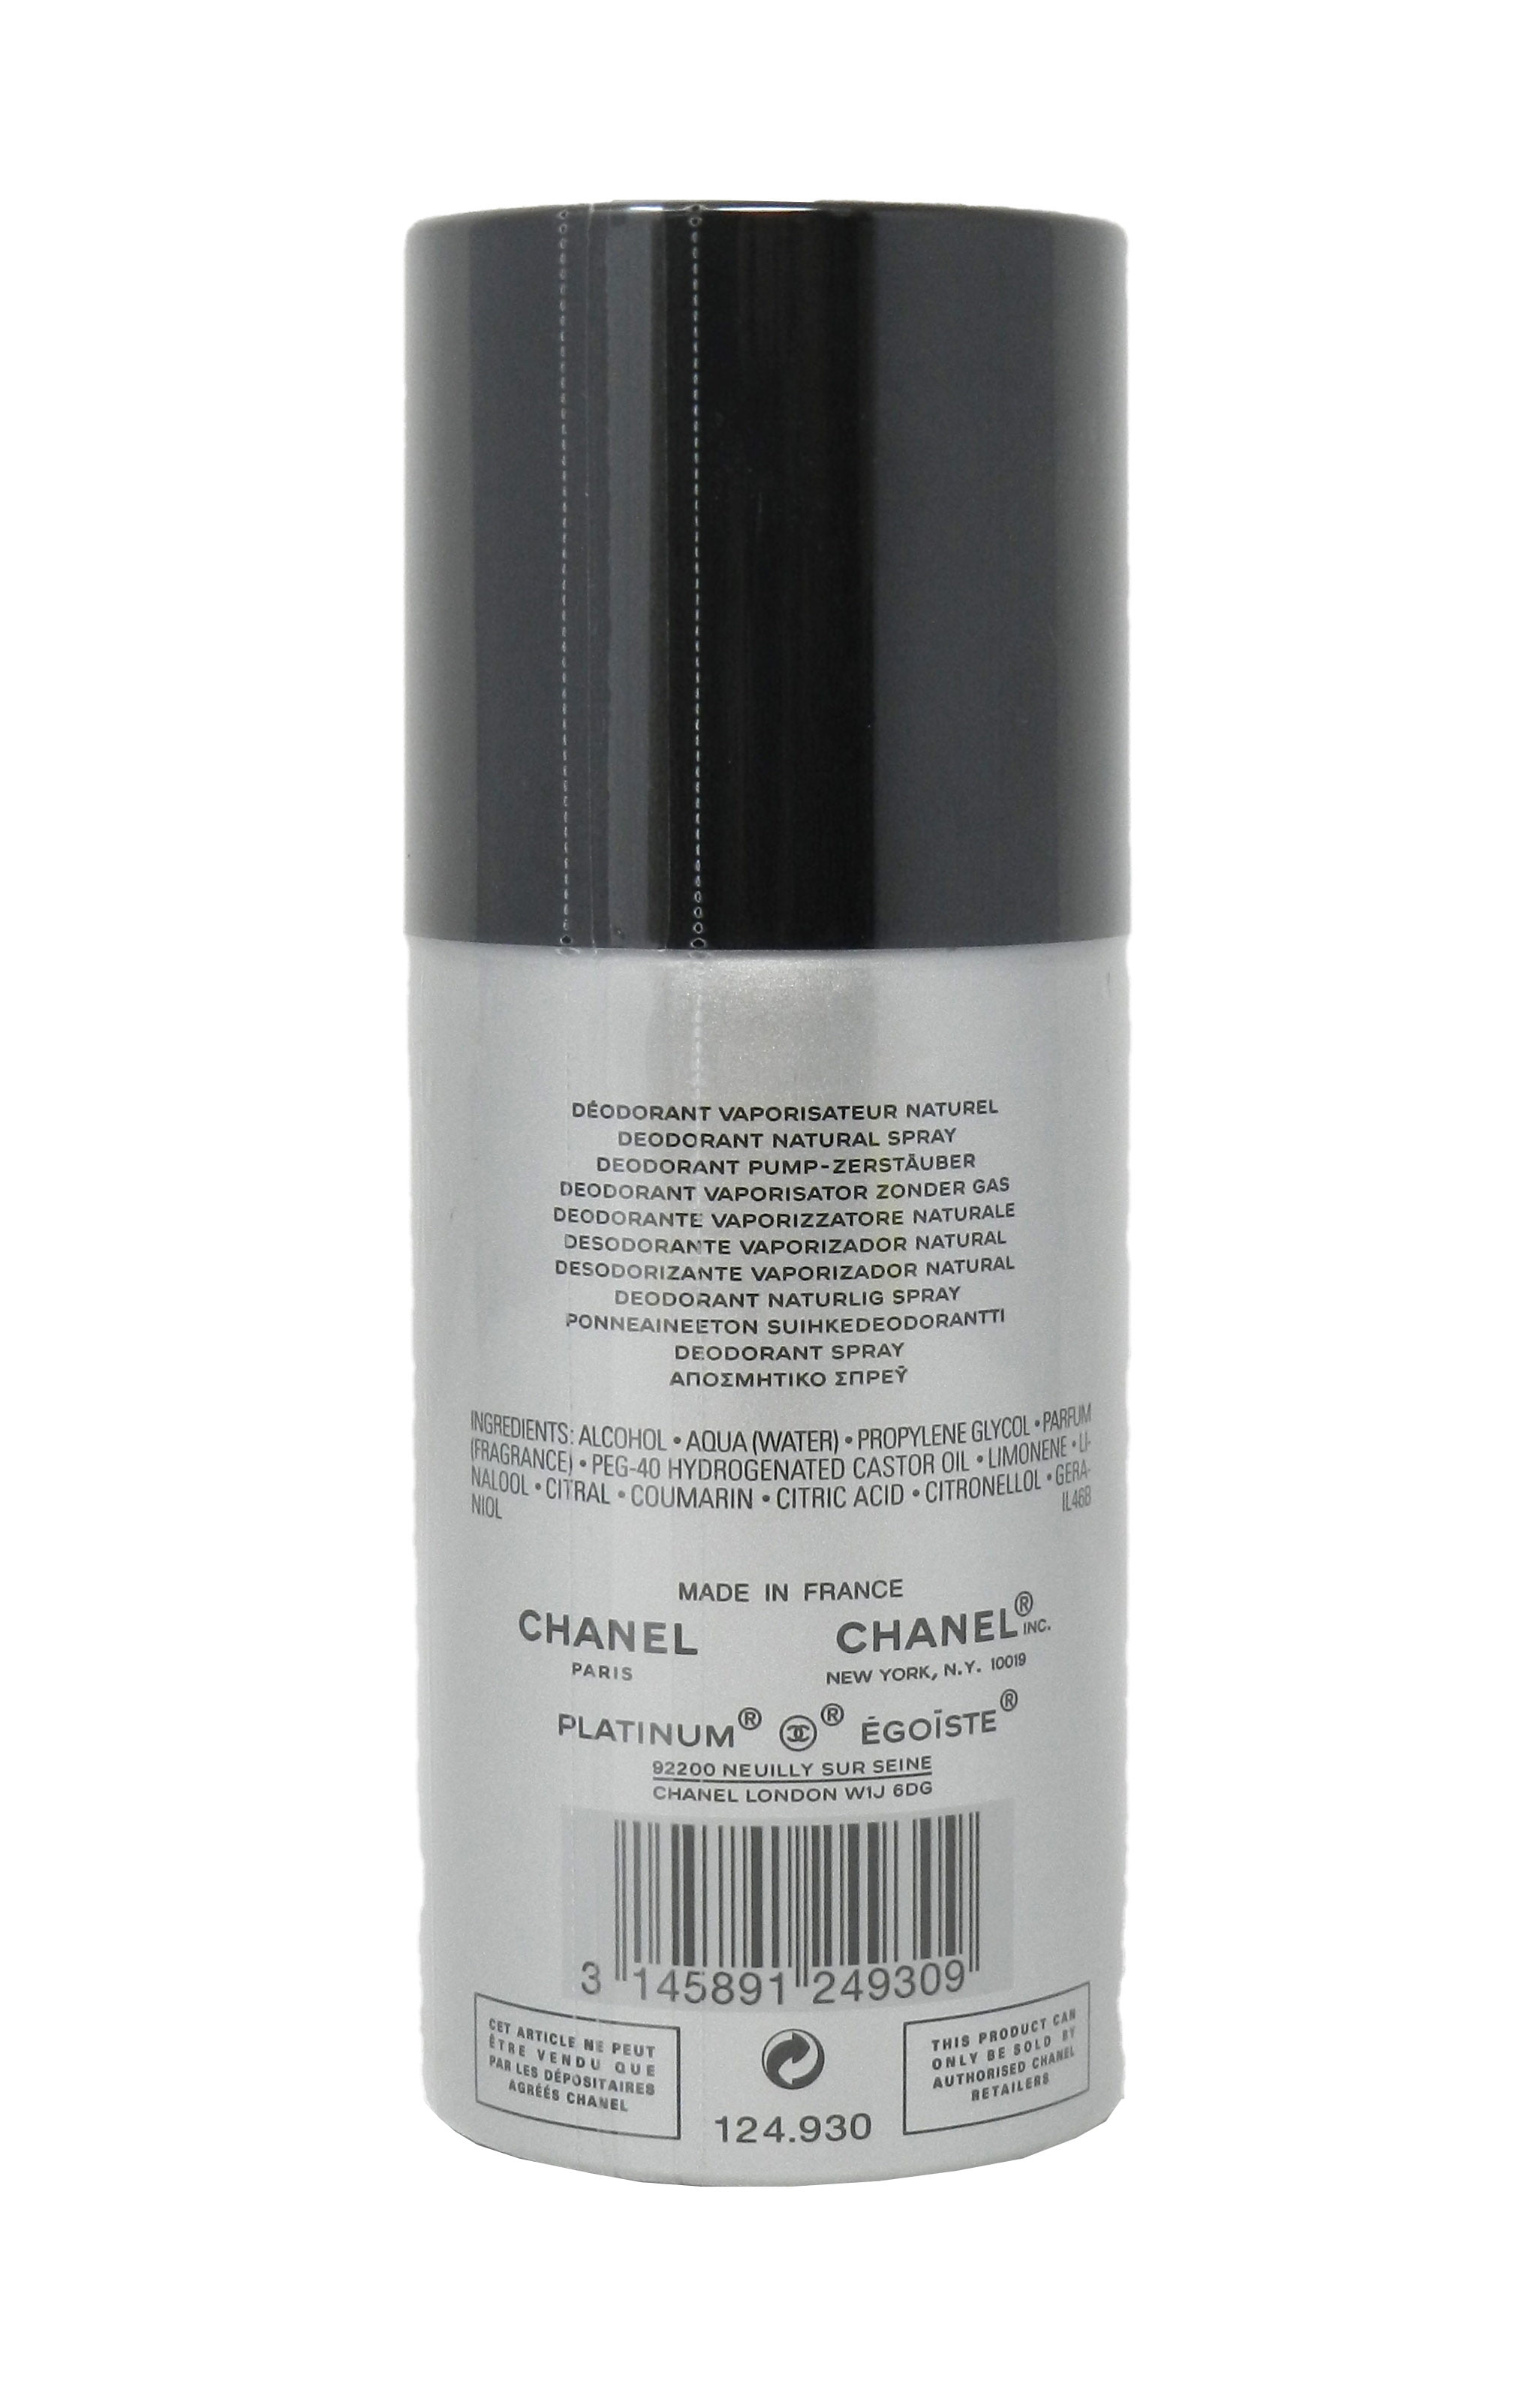  Platinum Egoiste Pour Homme Chanel Stick Deodorant 2